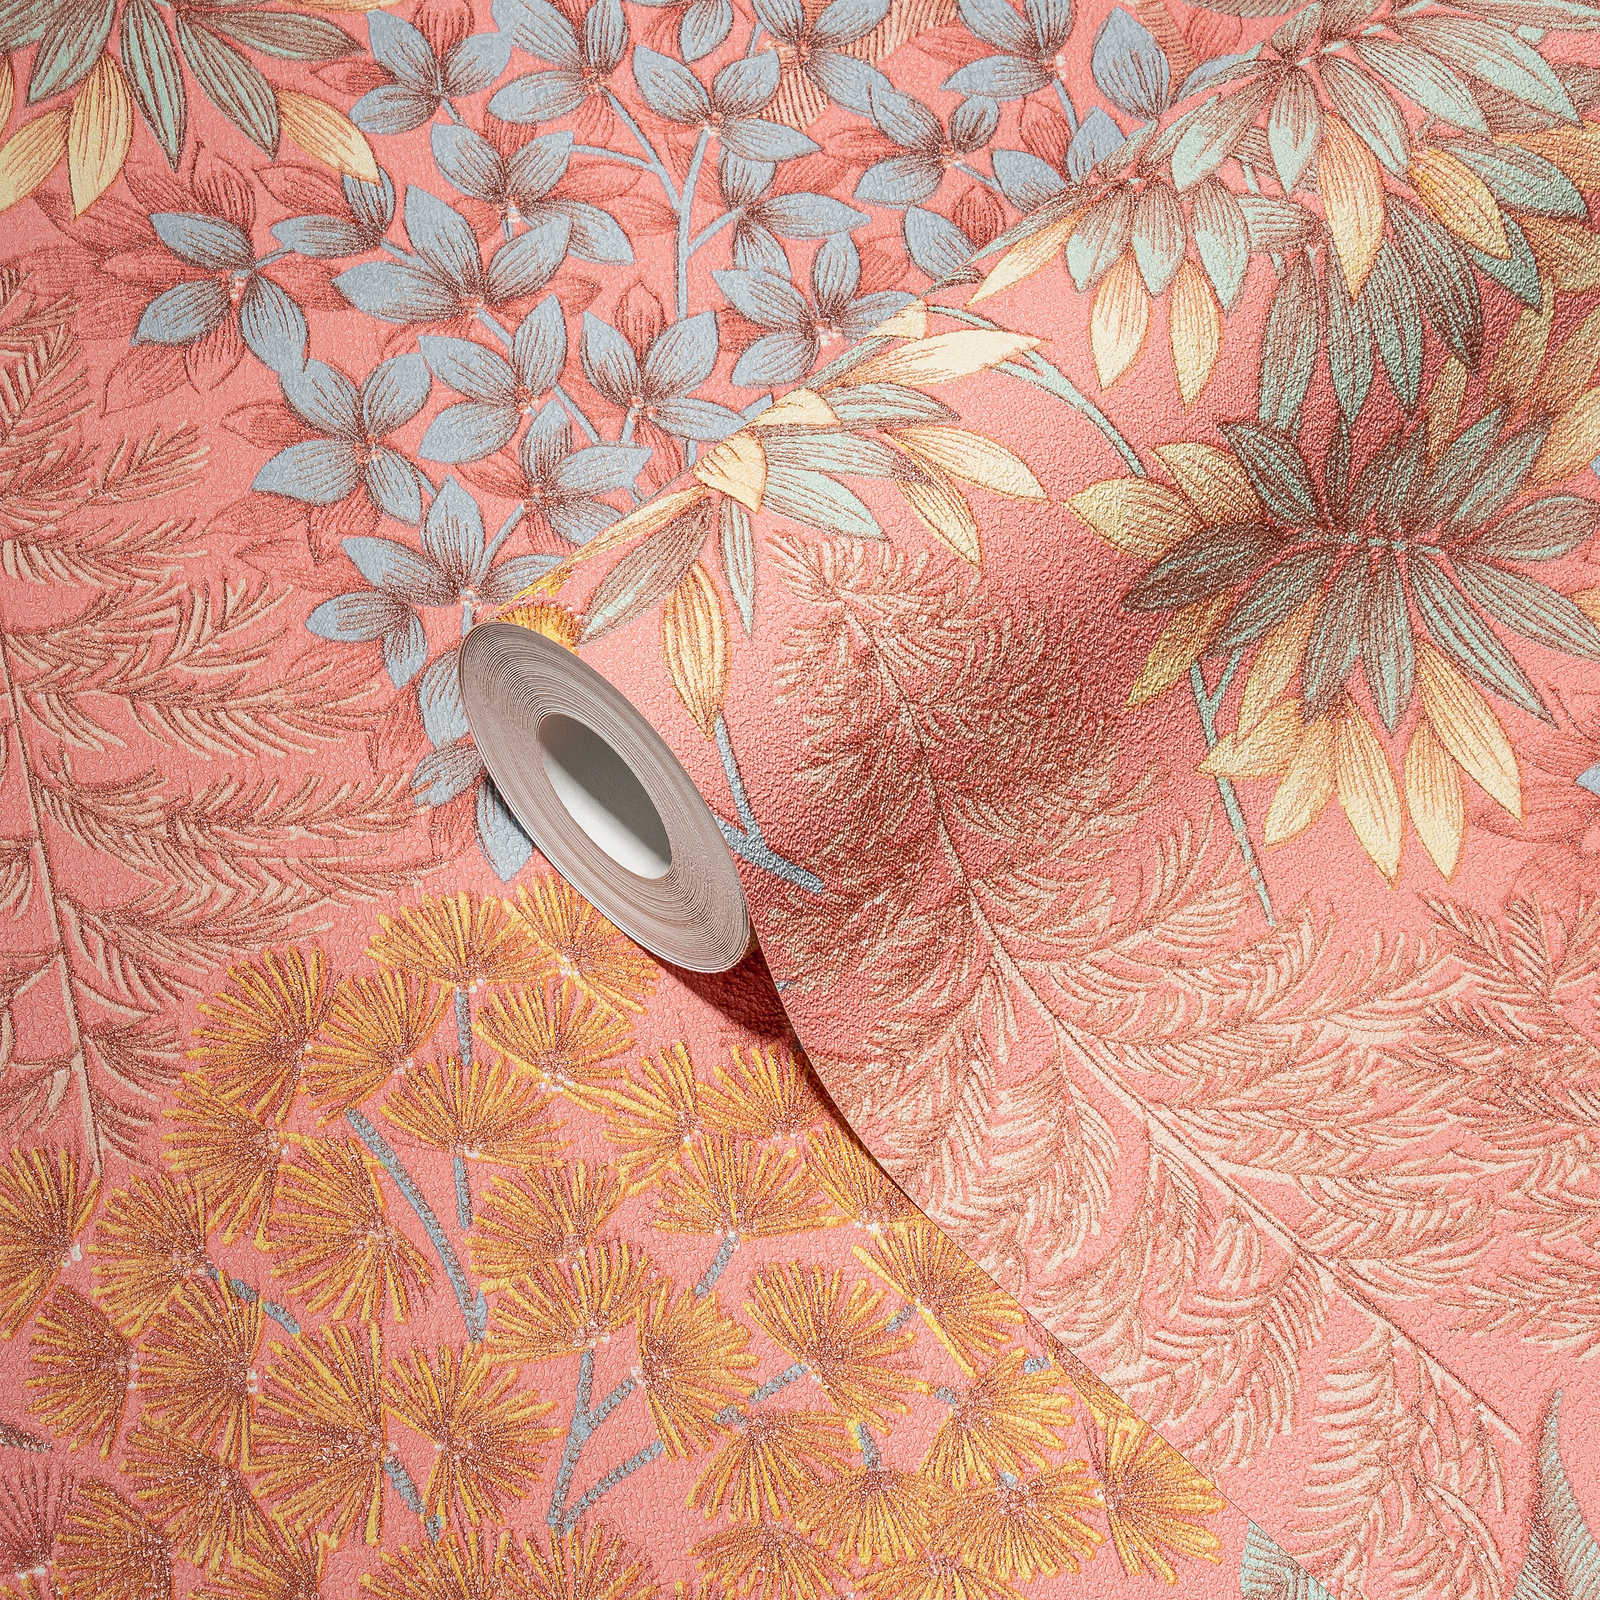             Speels bloemenbehang in een subtiele kleur - roze, blauw, geel
        